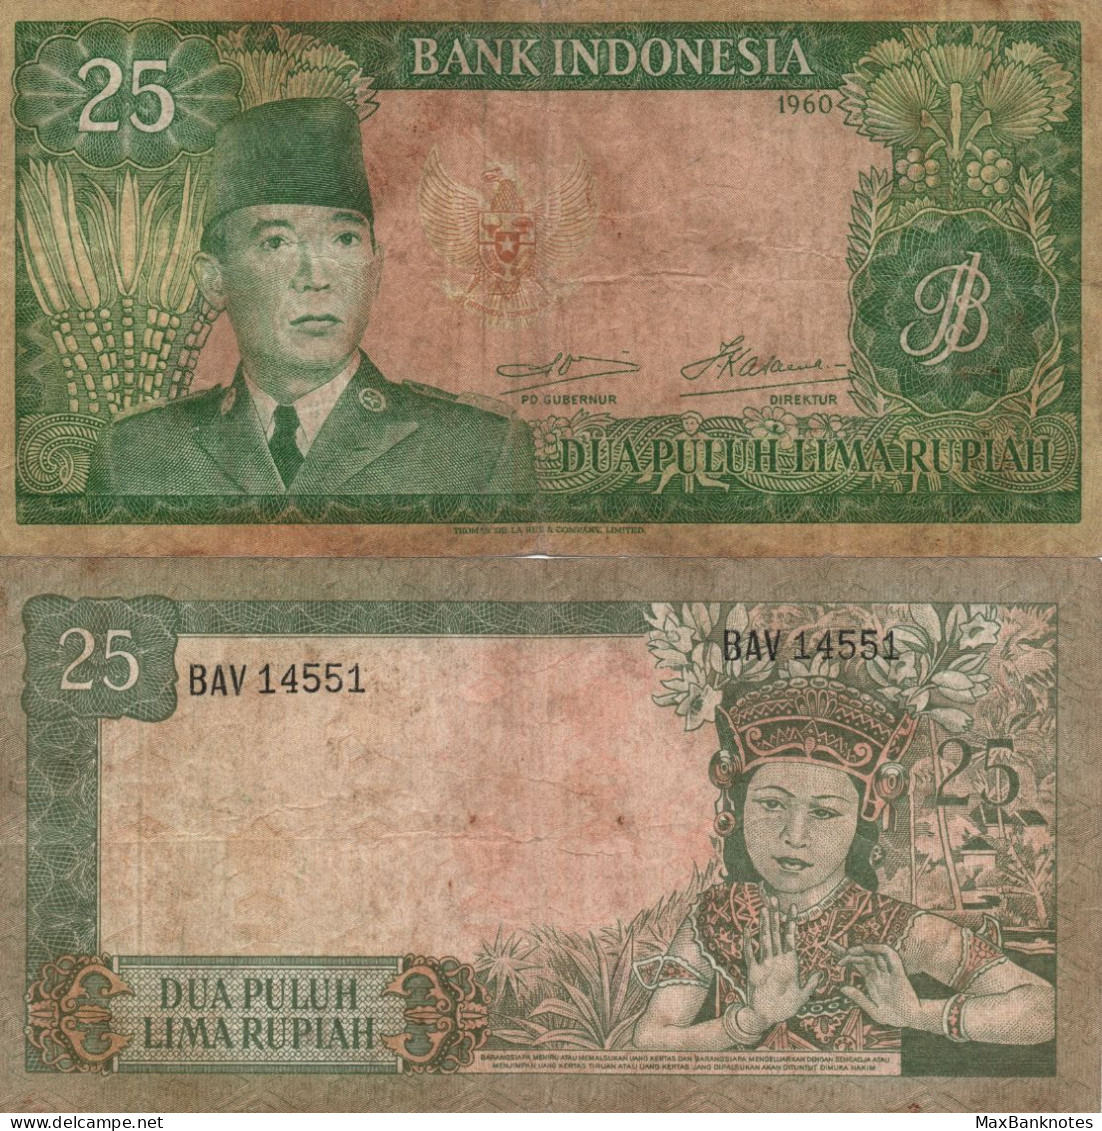 Indonesia / 25 Rupiah / 1960 / P-84(a) / FI - Indonesia